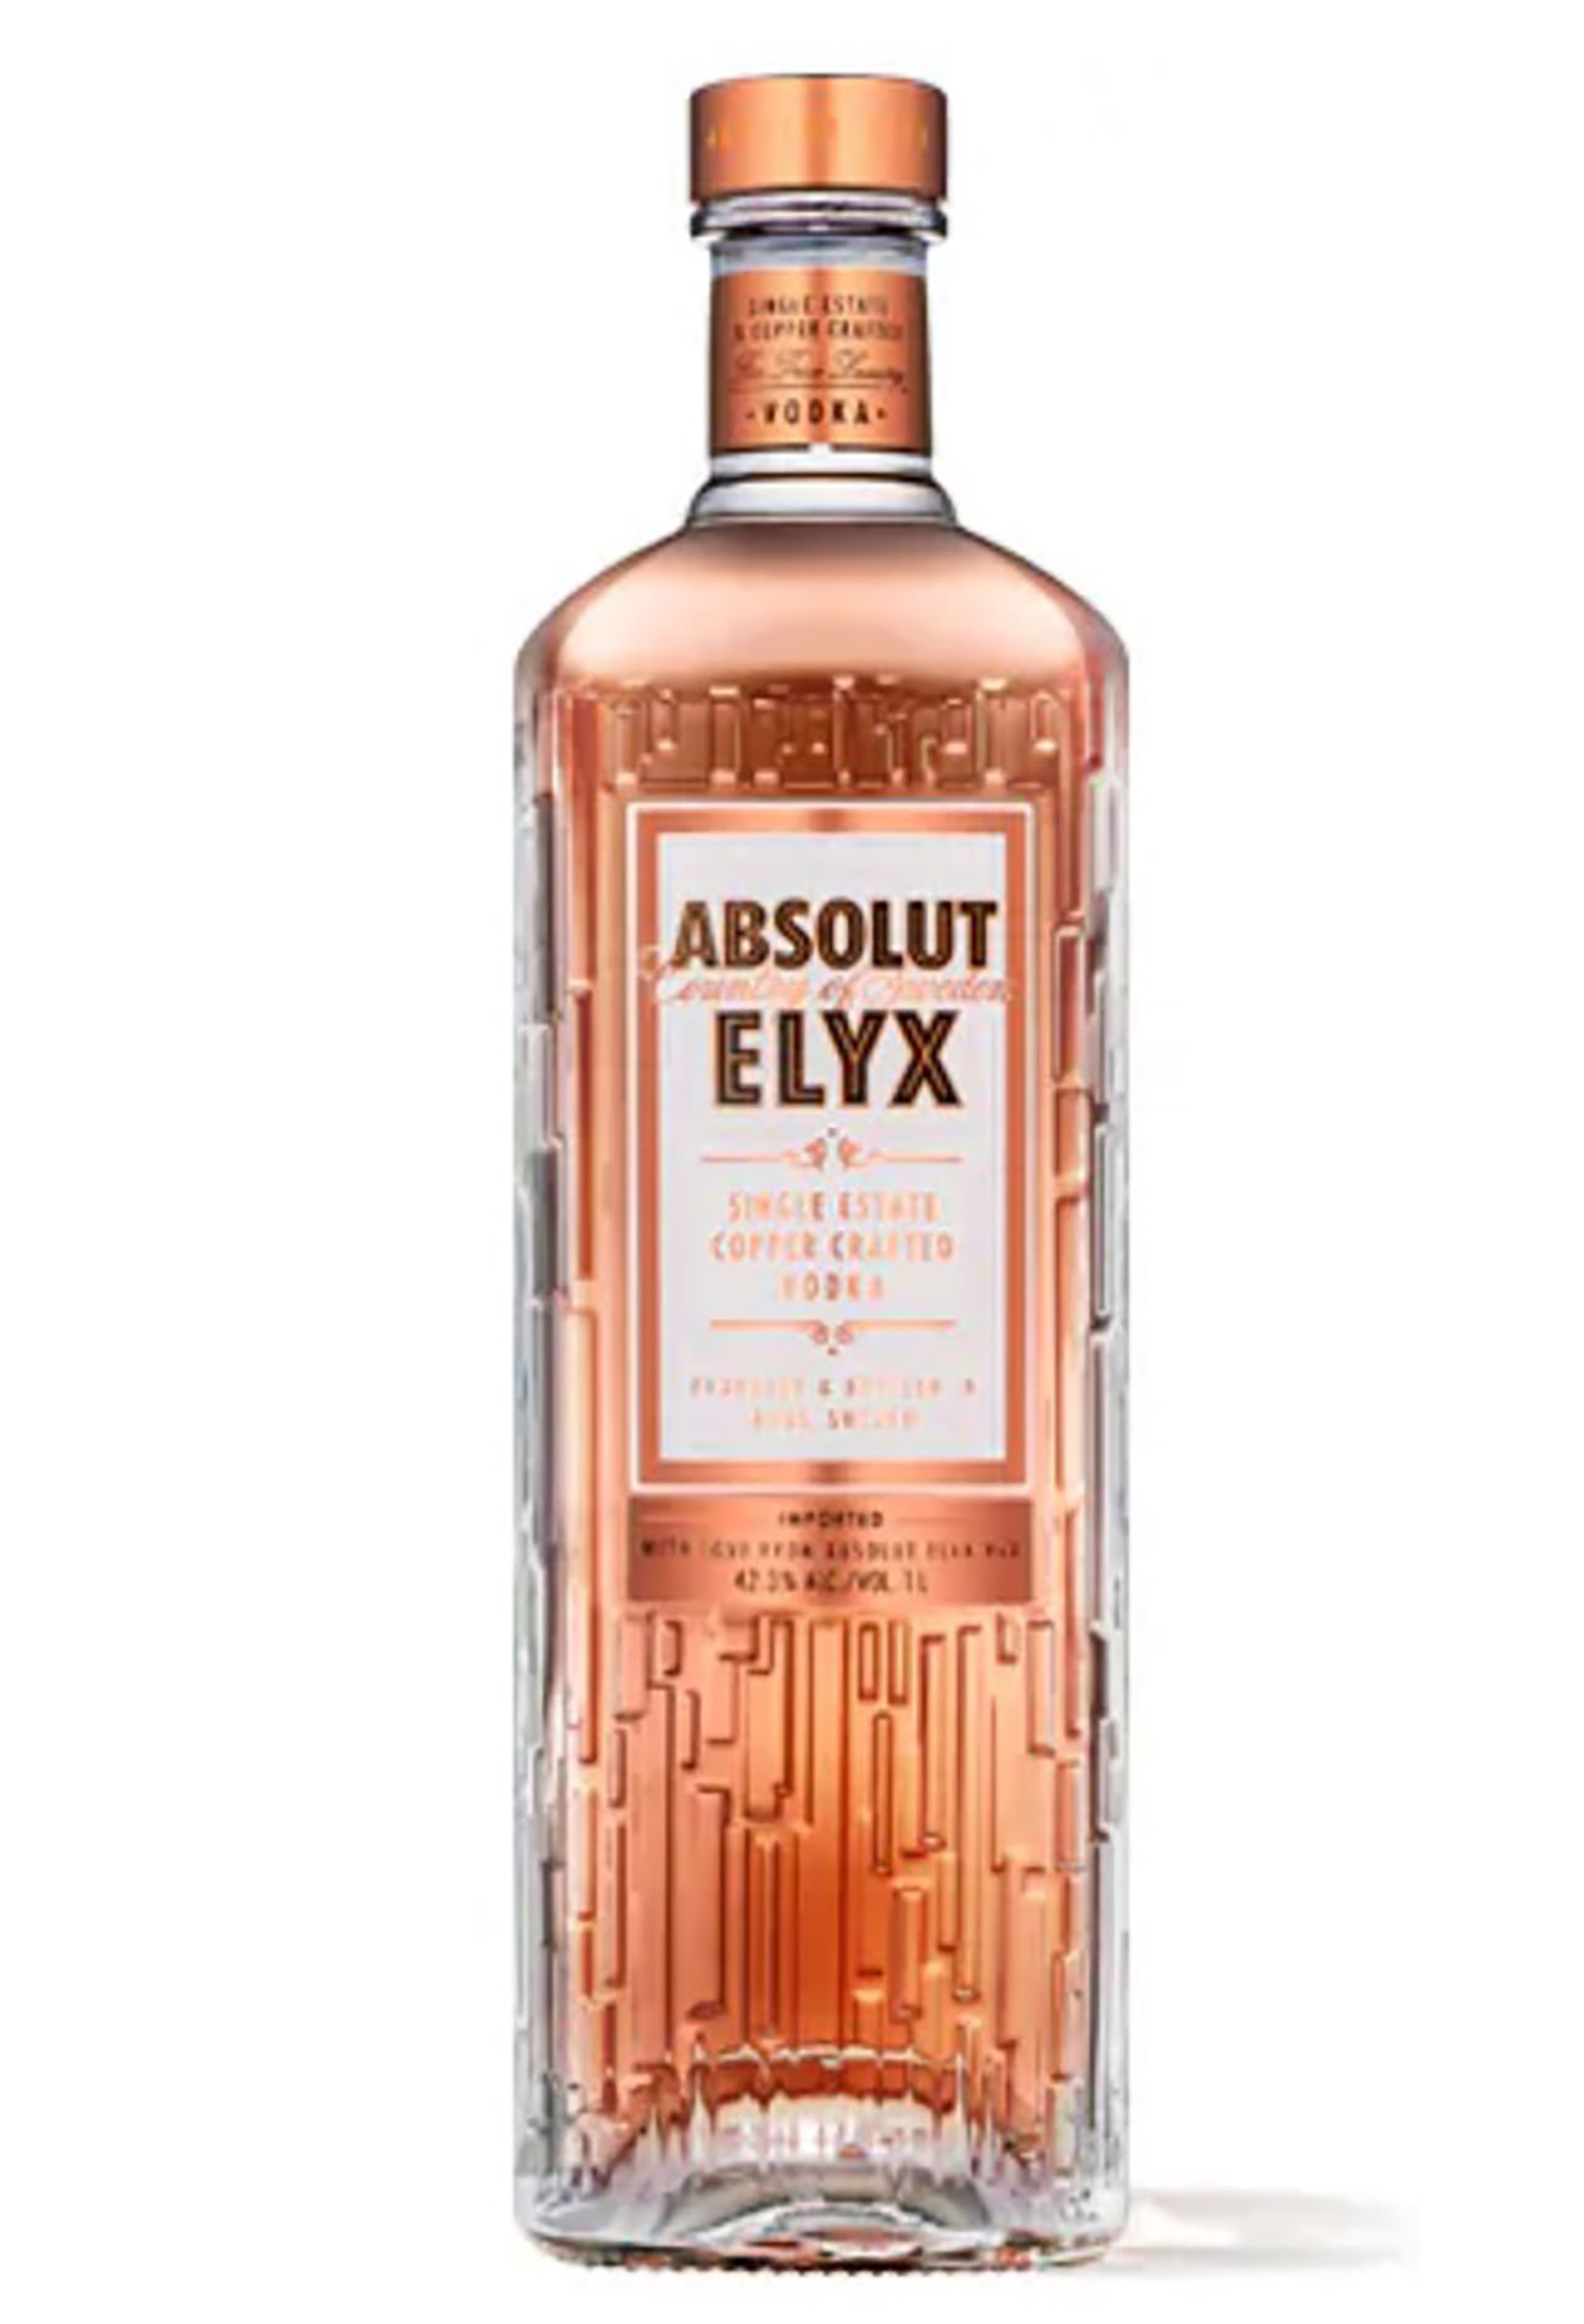 El vodka Absolut Elyx